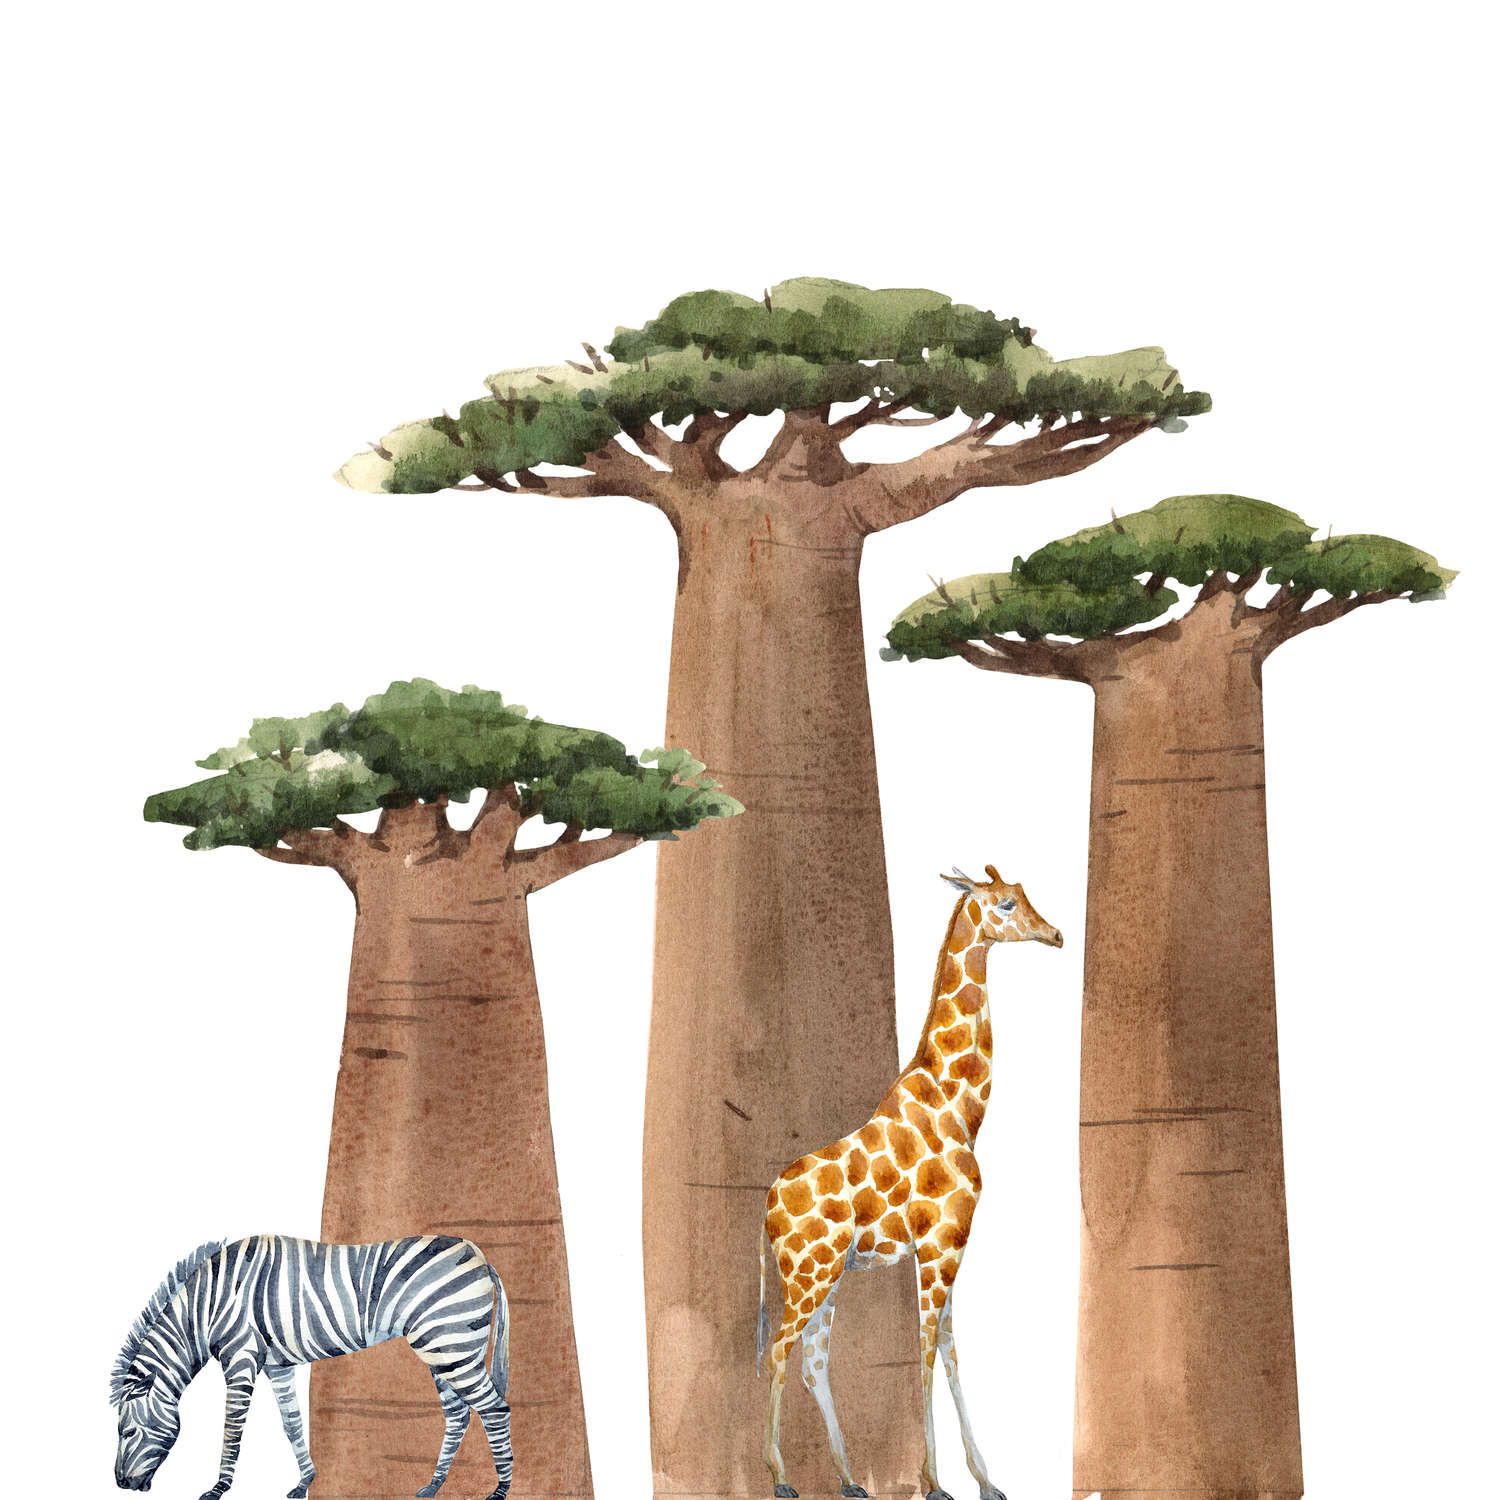             Fototapete Savanne mit Giraffe und Zebra – Glattes & perlmutt-schimmerndes Vlies
        